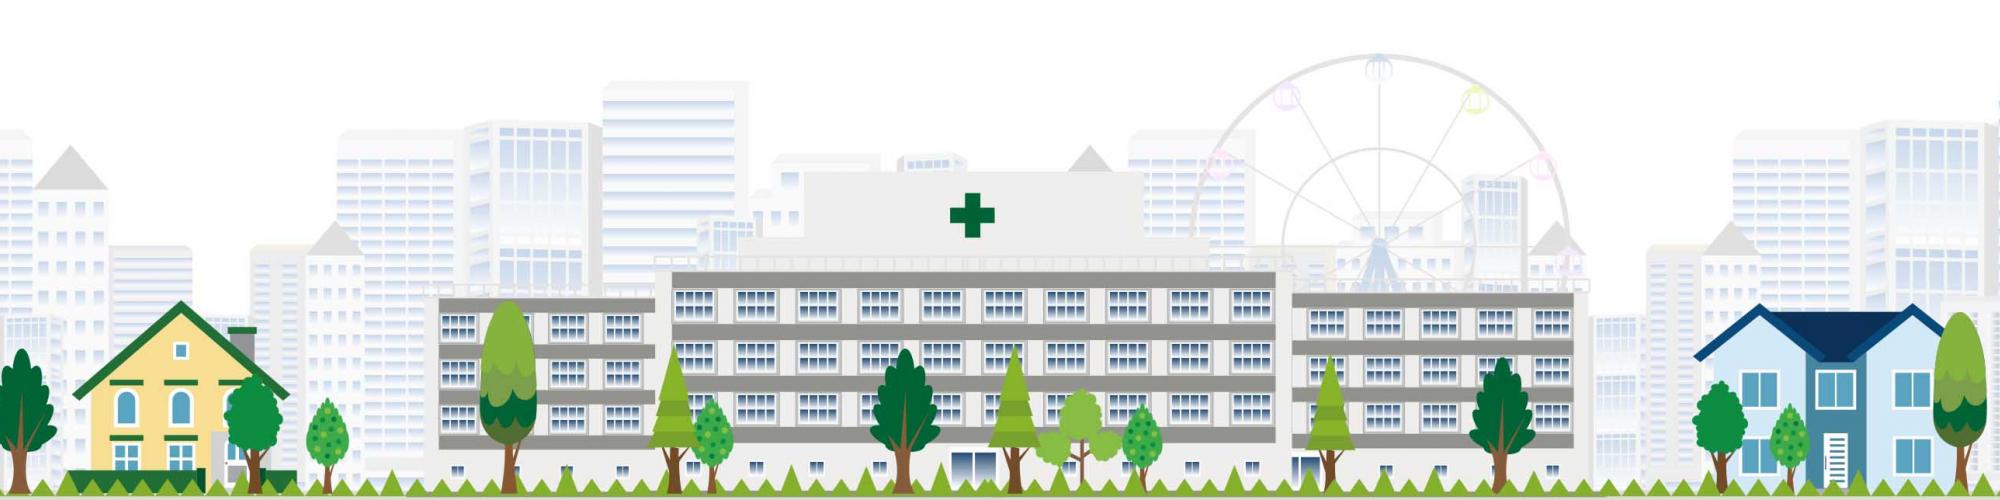 Niels-Stensen-Kliniken - St.-Vinzenz Hospital Haselünne GmbH